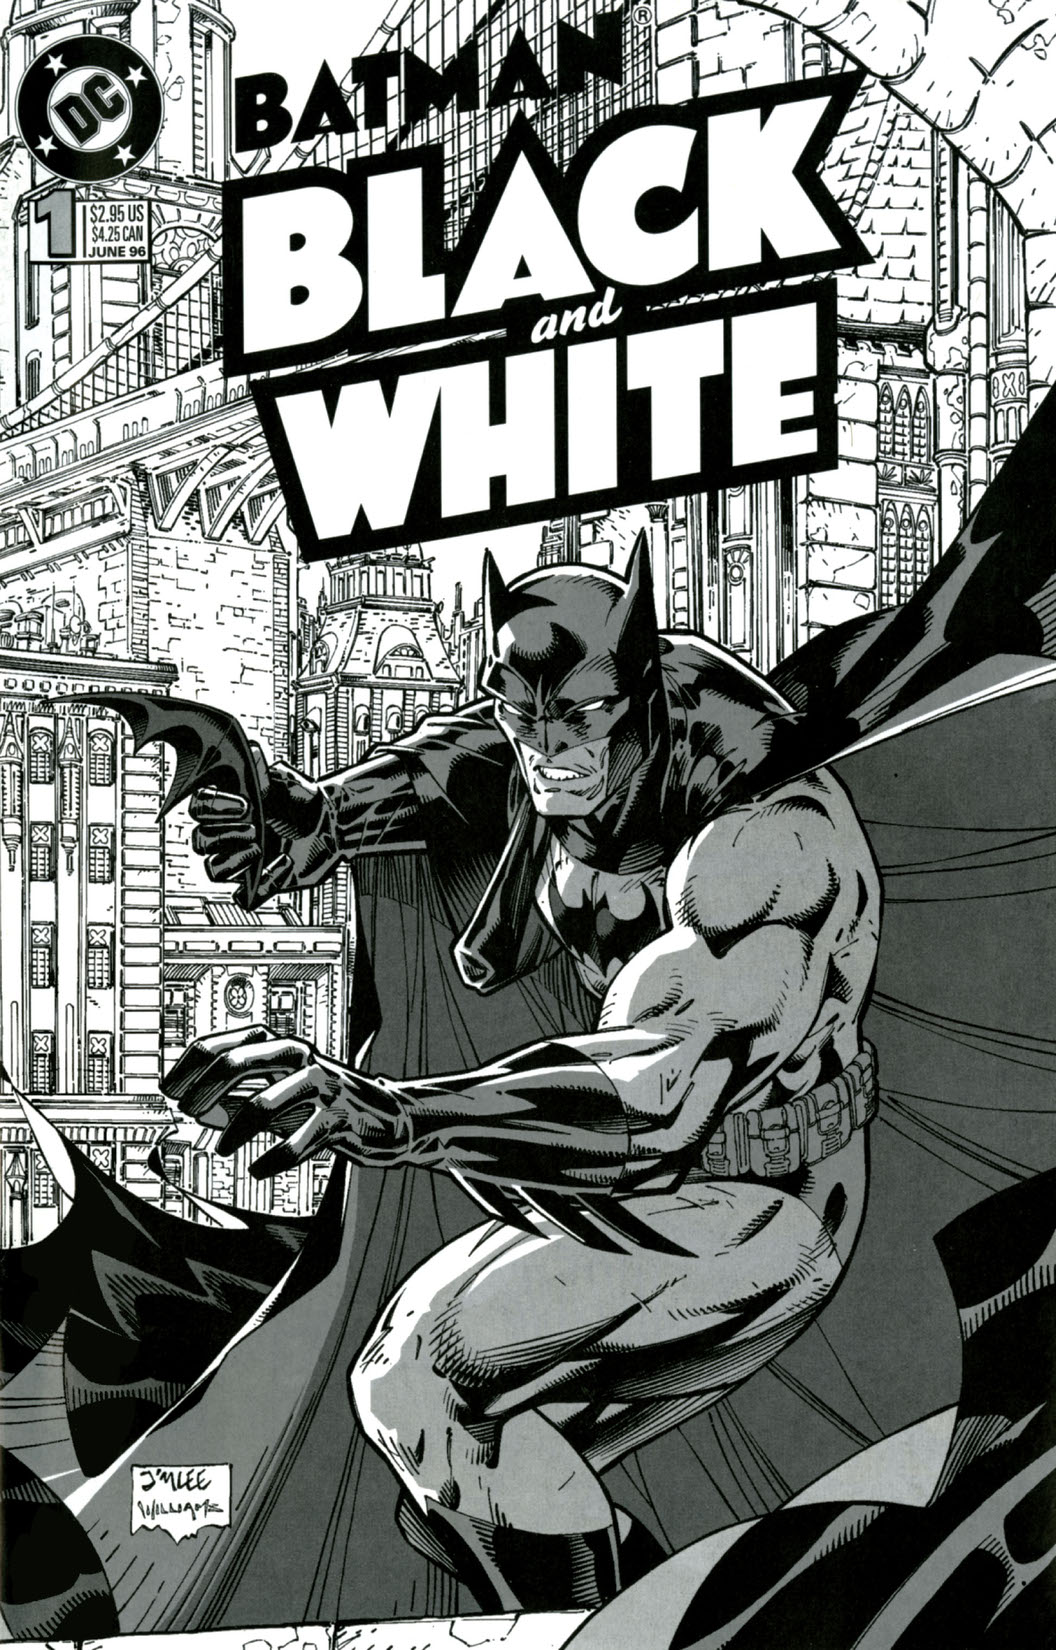 Batman: Black & White (1996-) #1 preview images